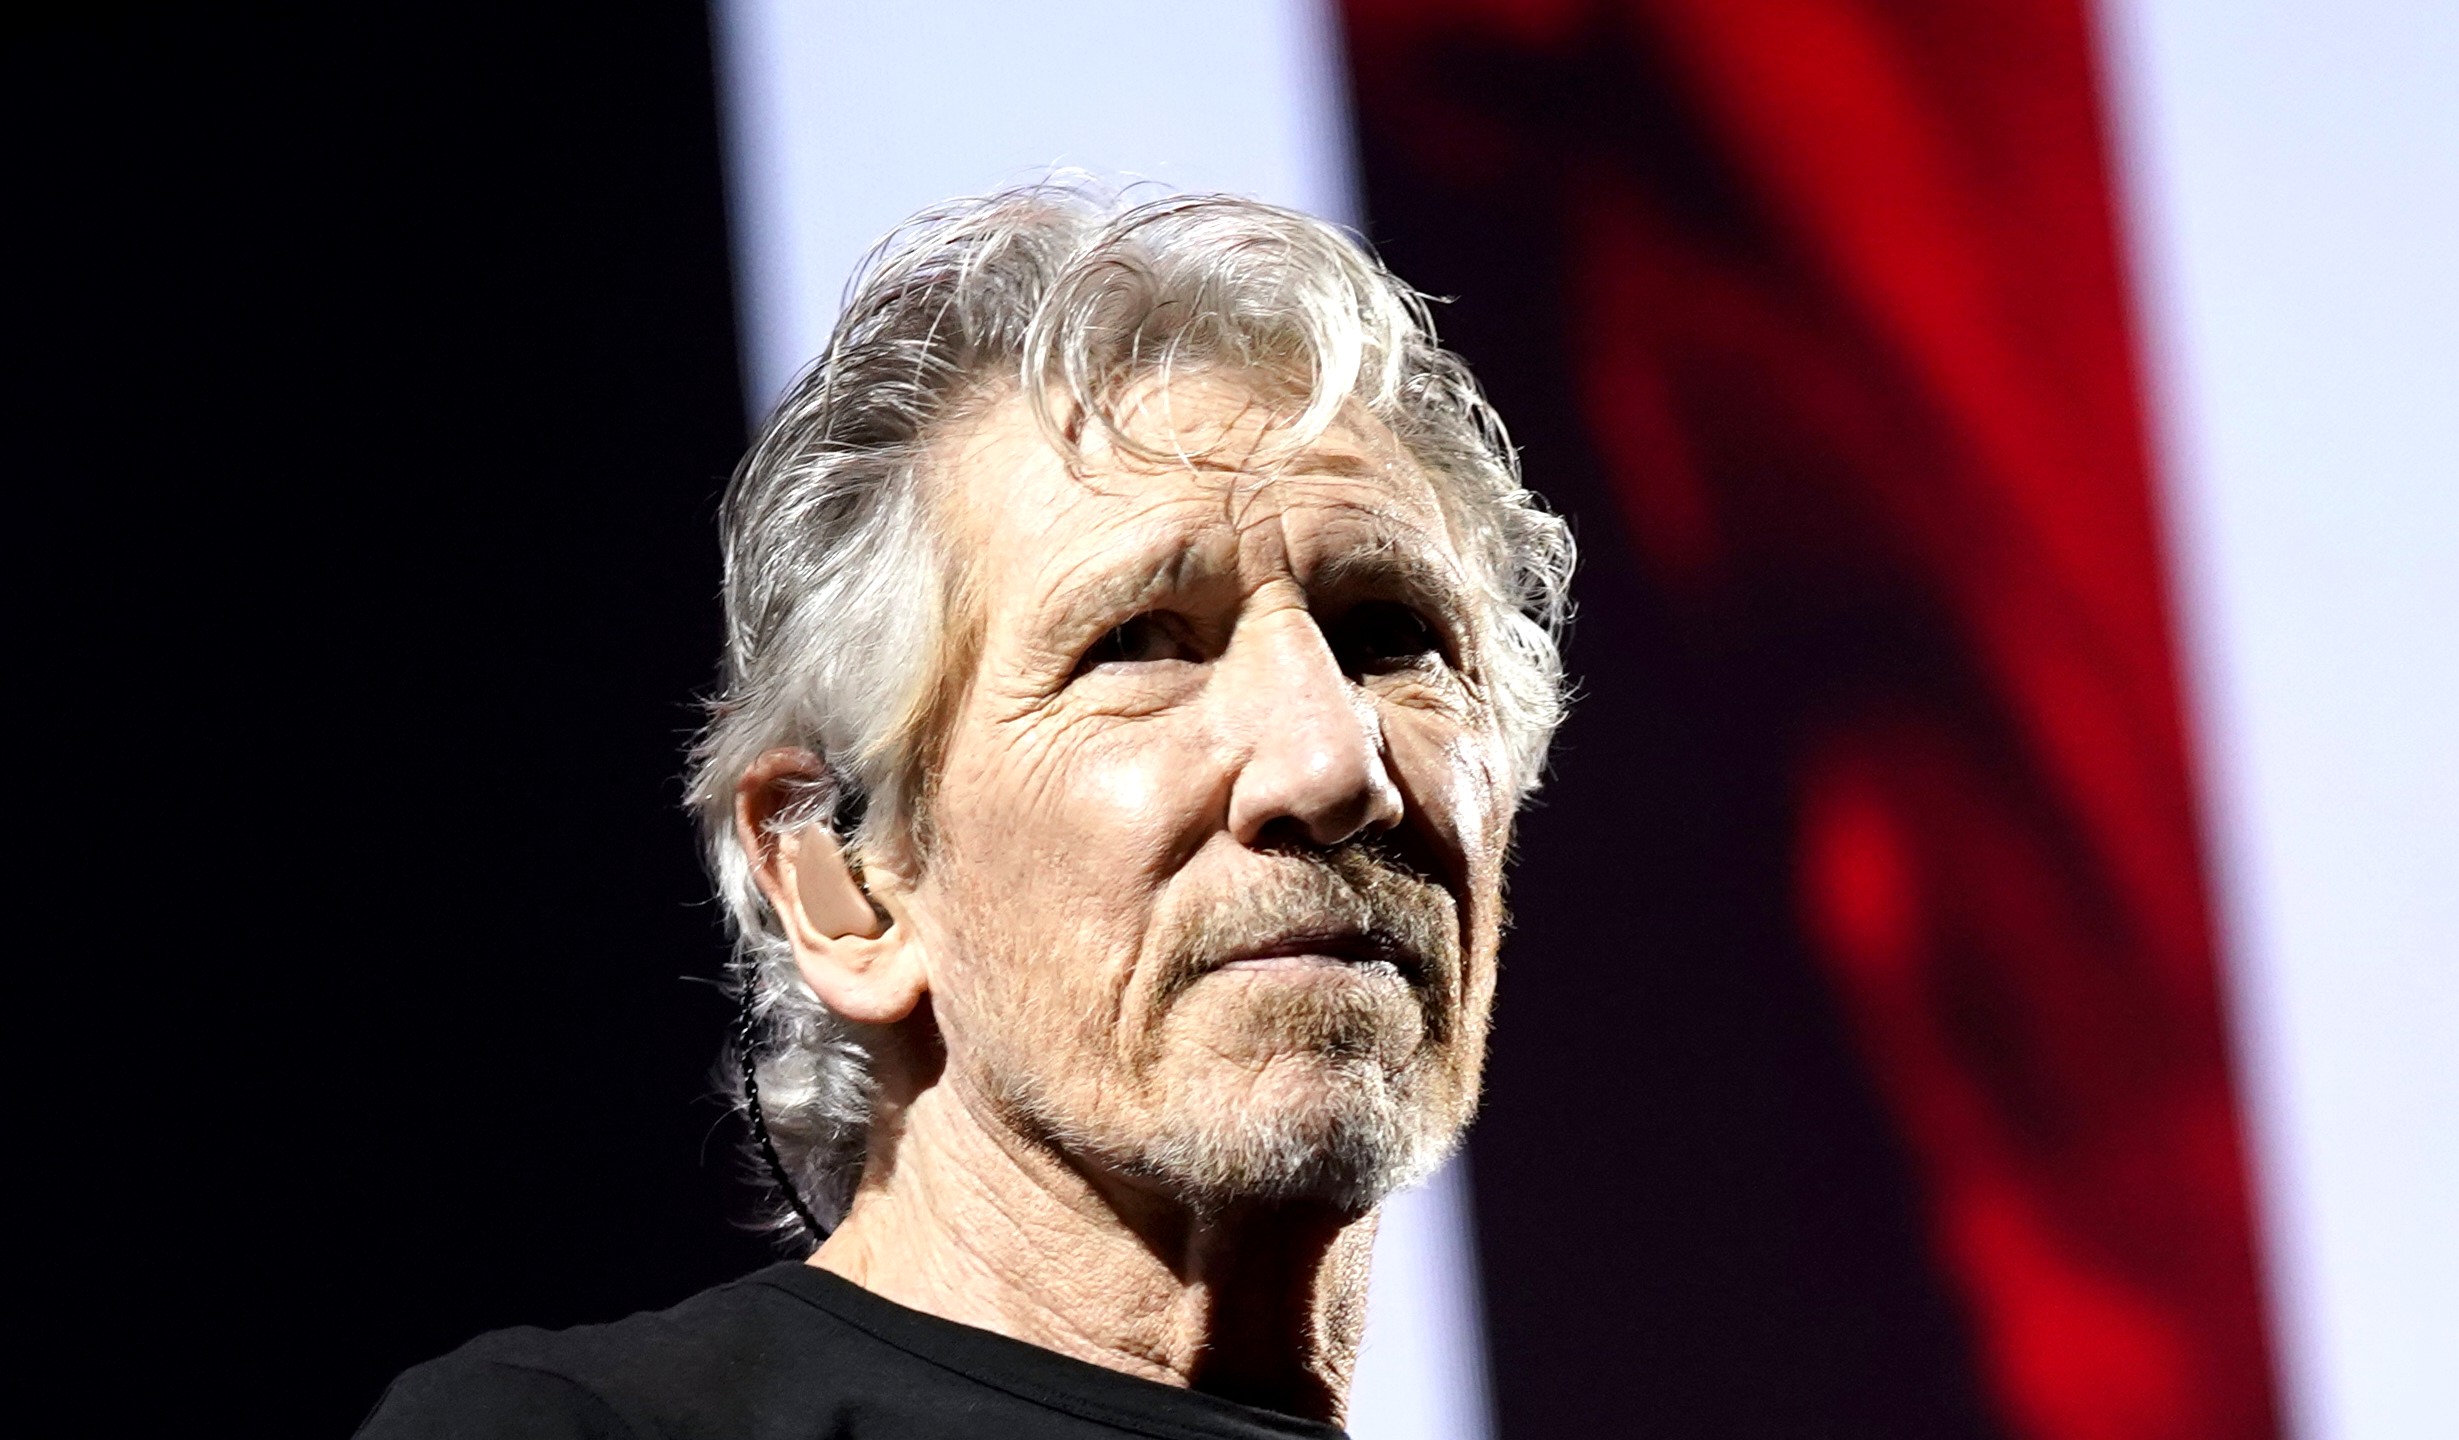 ‘Εκκληση Roger Waters για Μέση Ανατολή: “Σας παρακαλώ, σταματήστε!”